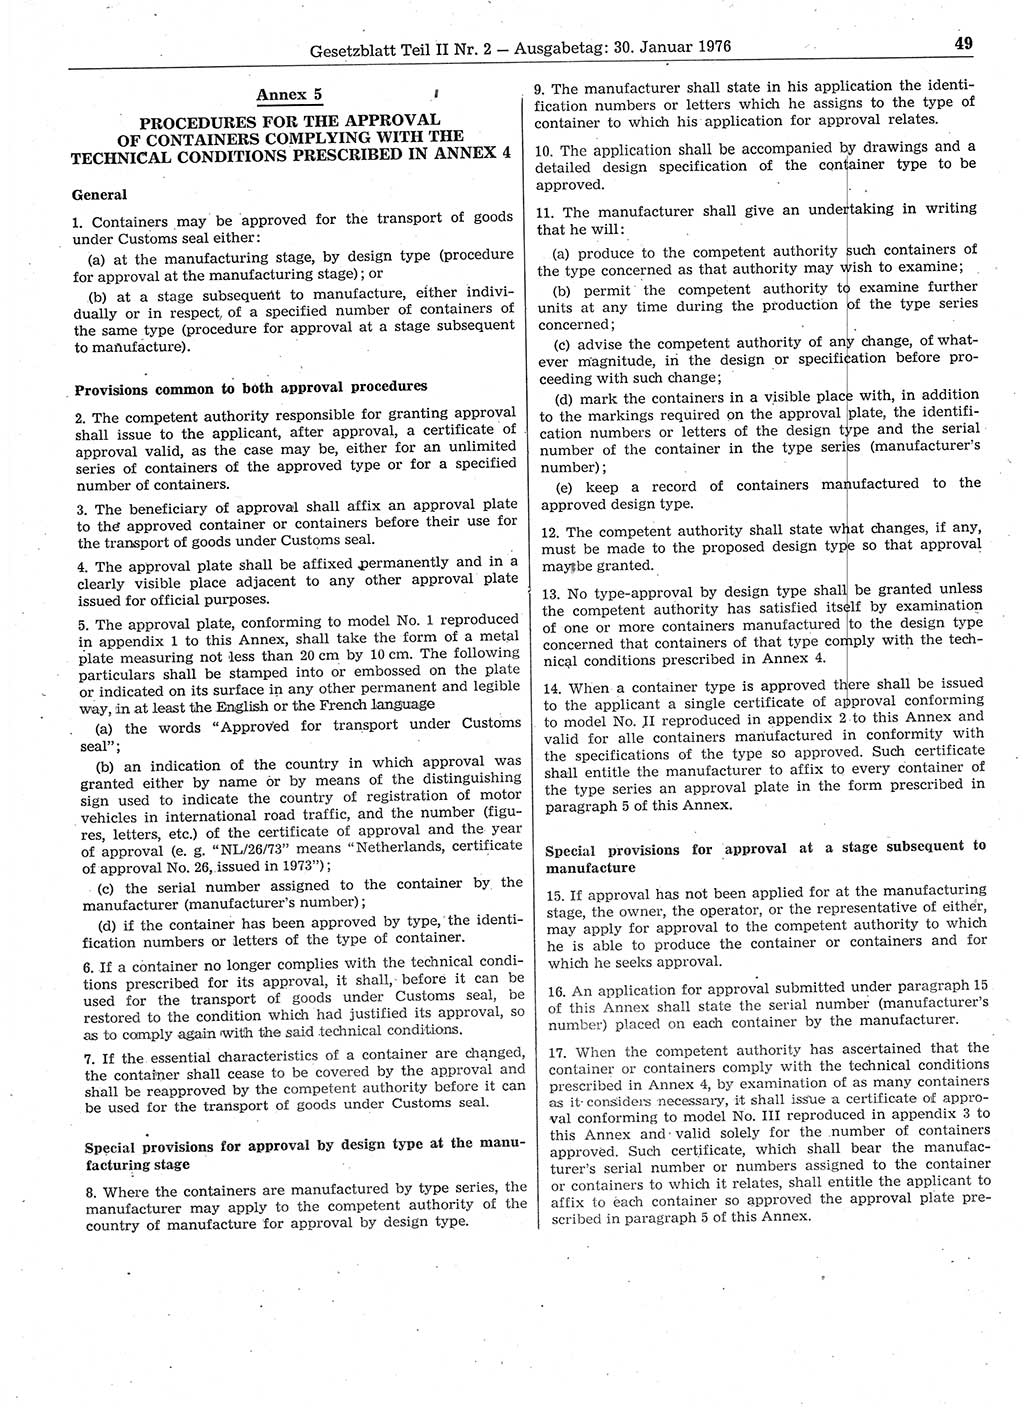 Gesetzblatt (GBl.) der Deutschen Demokratischen Republik (DDR) Teil ⅠⅠ 1976, Seite 49 (GBl. DDR ⅠⅠ 1976, S. 49)